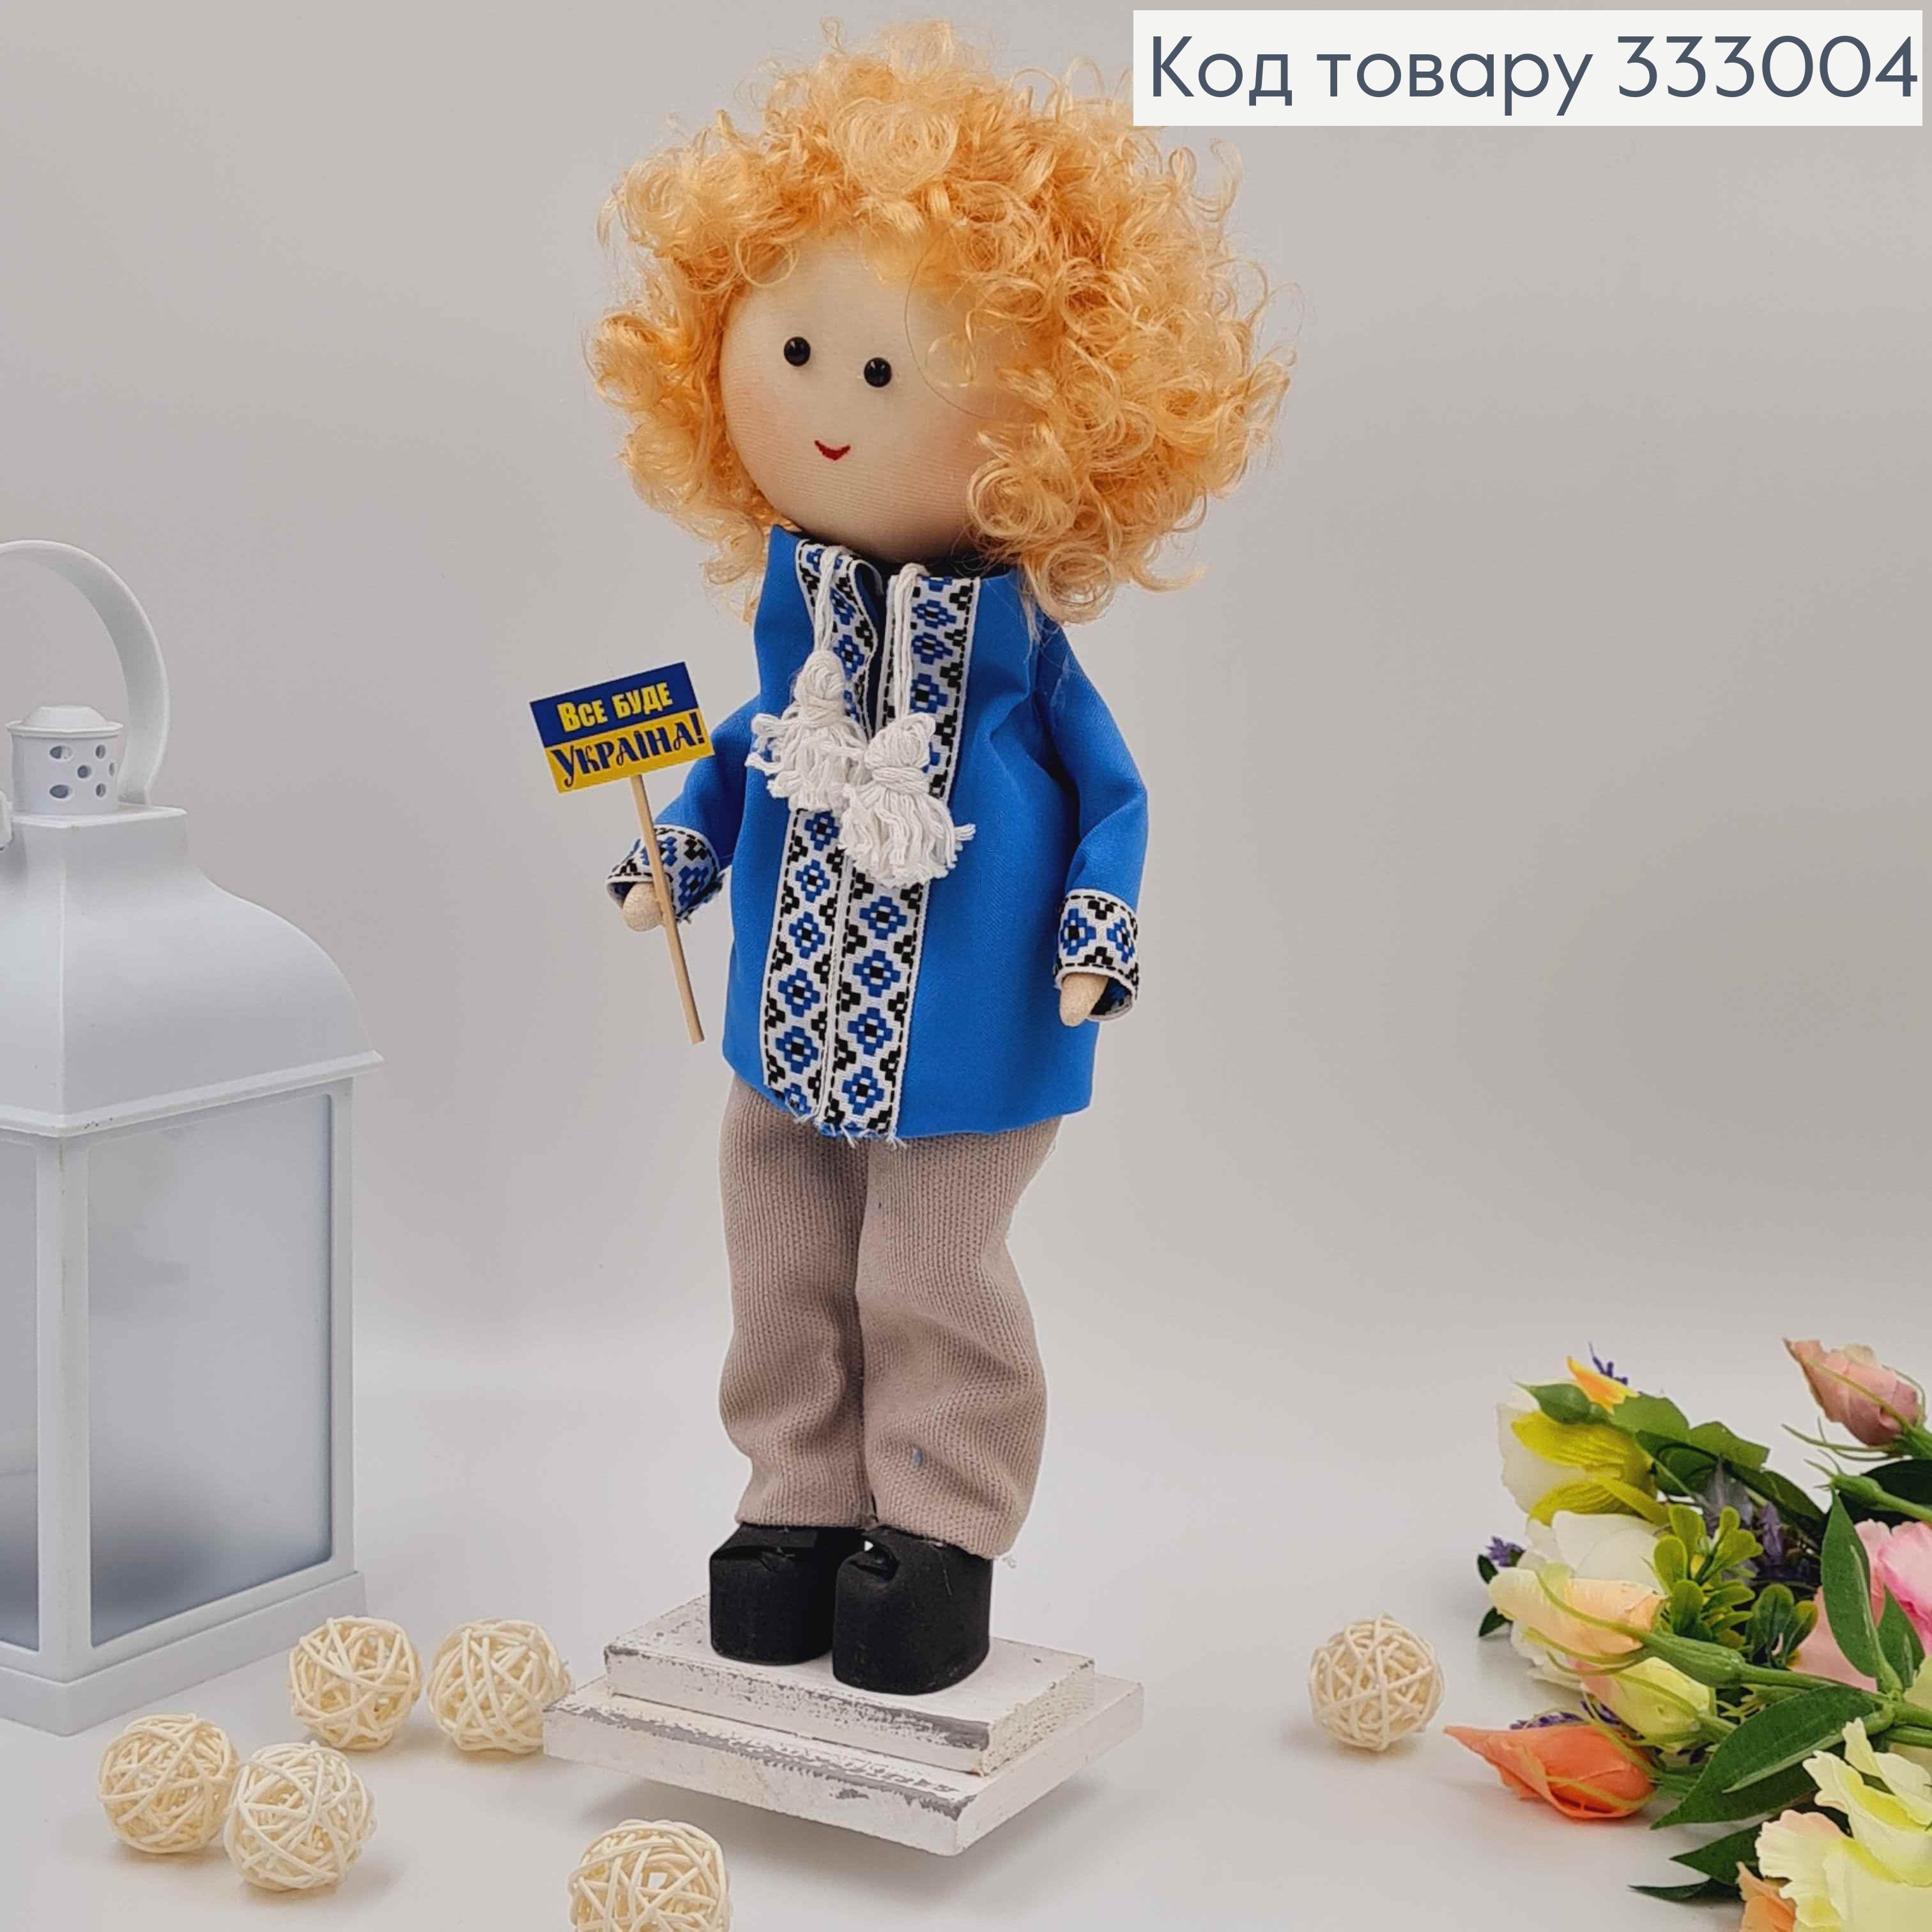 Кукла Мальчик, "Кудрявый белокурый" в голубой рубашке, высота 35см,см, ручная работа, Украина. 333004 фото 2